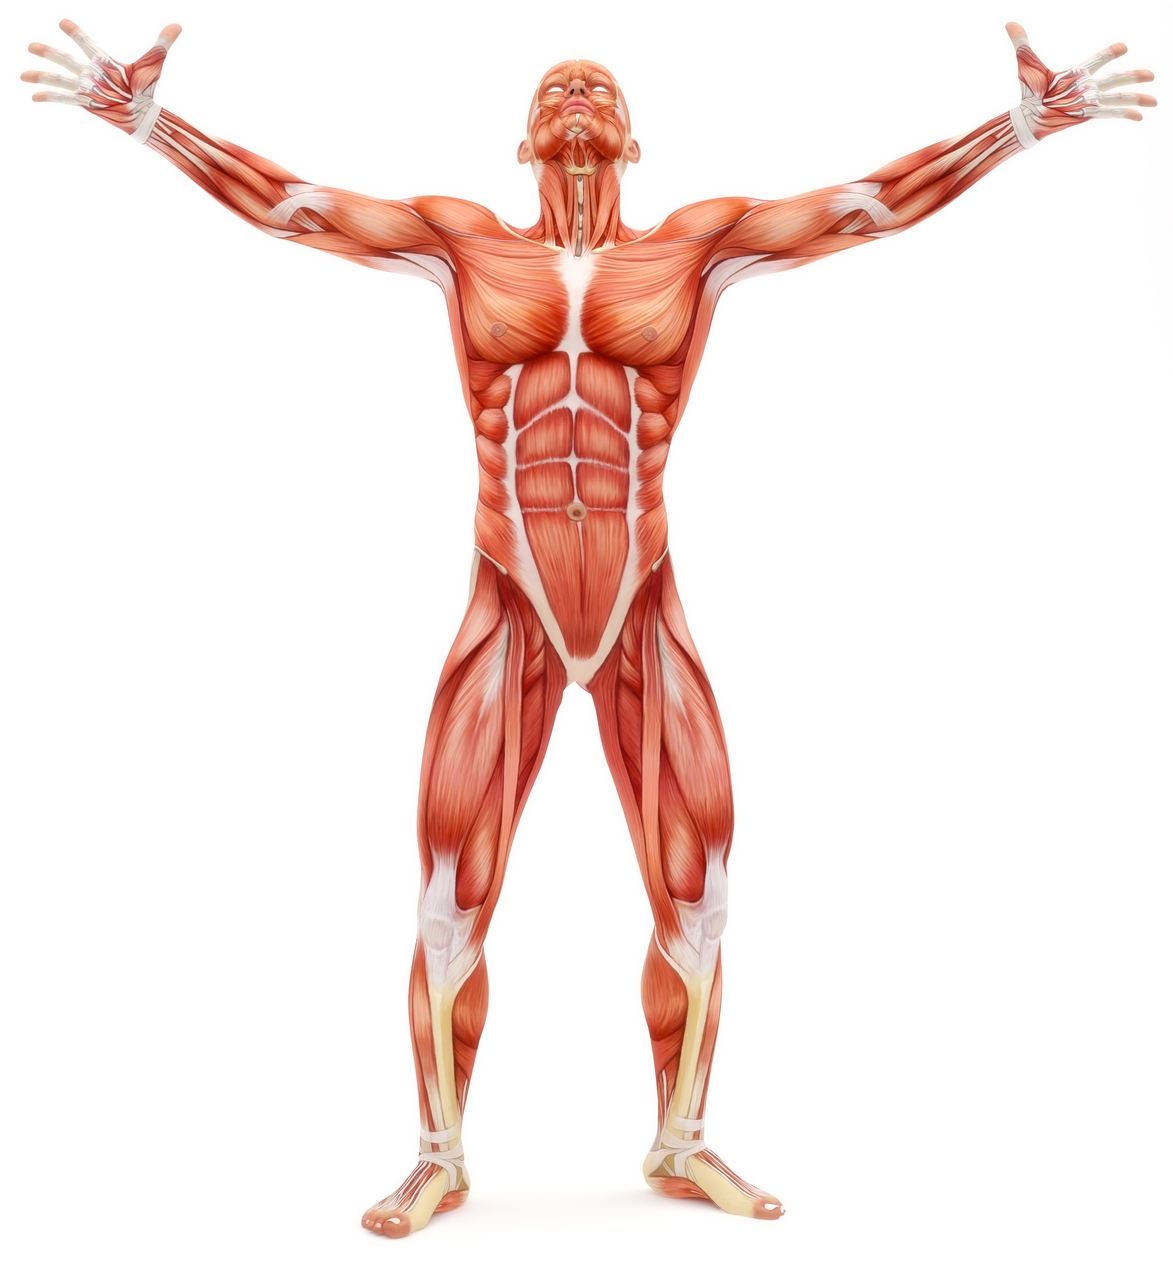 कृत्रिम मांसपेशियाँ: मानव शरीर कृत्रिम मांसपेशियों के लिए स्वर्ण मानक बना हुआ है